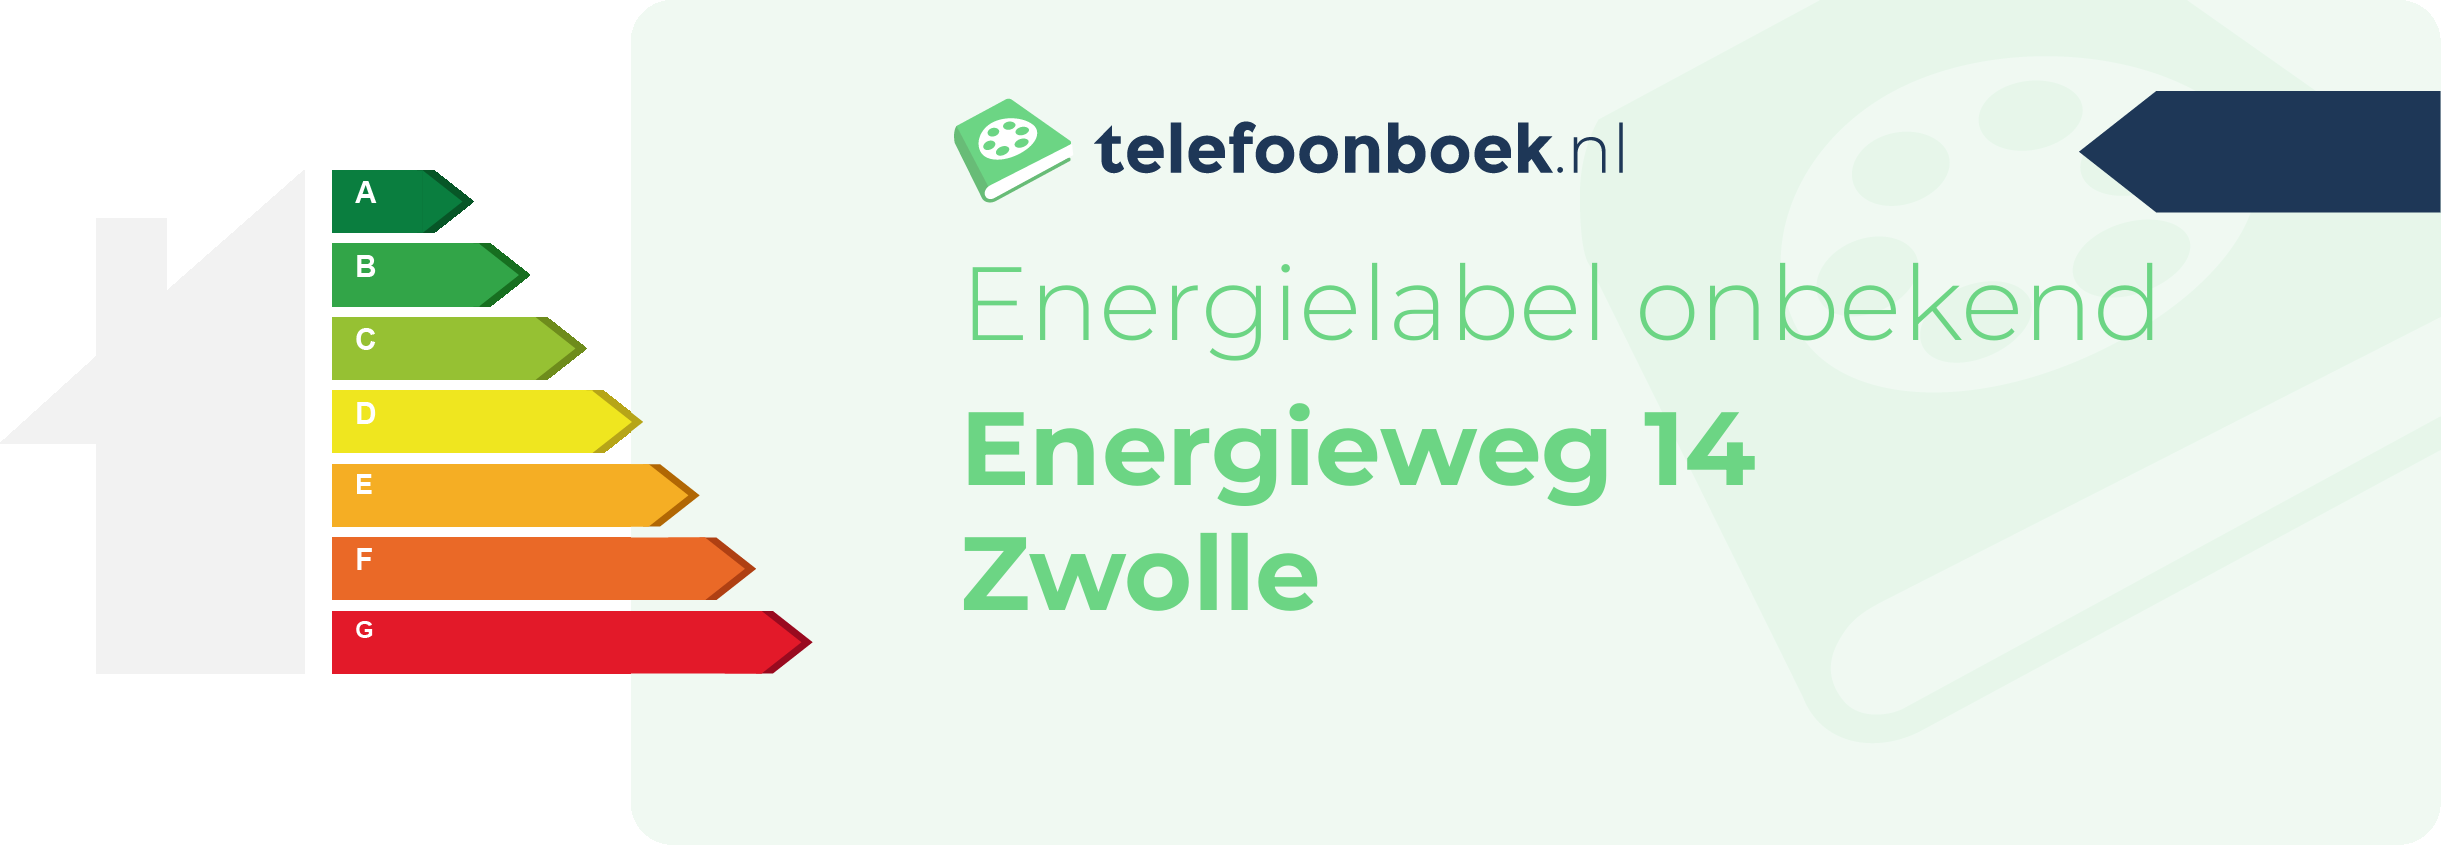 Energielabel Energieweg 14 Zwolle